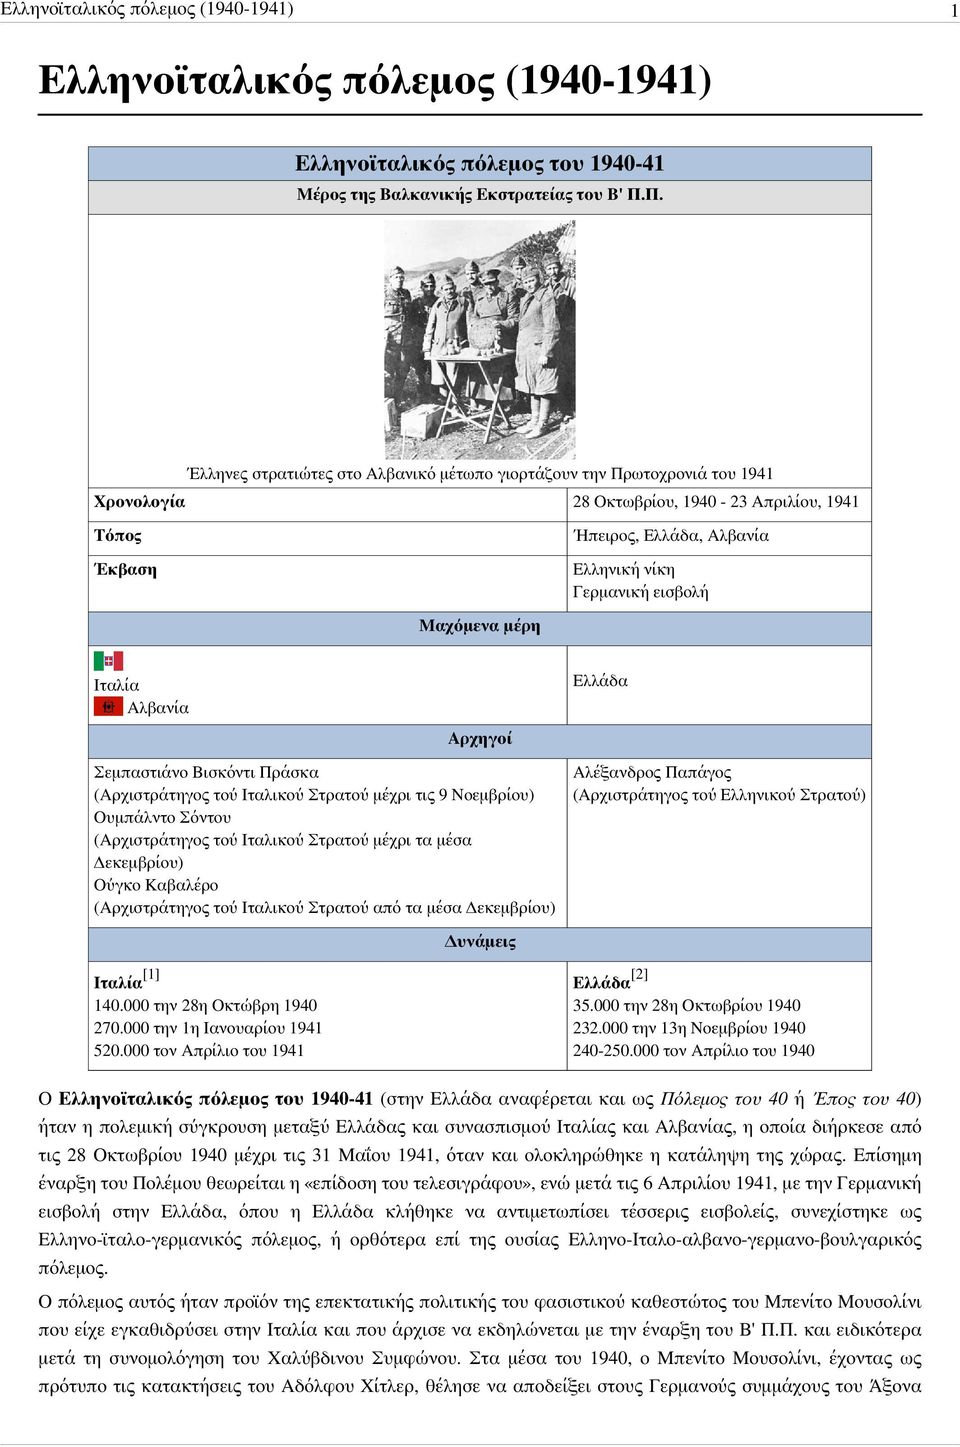 Μαχόμενα μέρη Ιταλία Αλβανία Ελλάδα Αρχηγοί Σεμπαστιάνο Βισκόντι Πράσκα (Αρχιστράτηγος τού Ιταλικού Στρατού μέχρι τις 9 Νοεμβρίου) Ουμπάλντο Σόντου (Αρχιστράτηγος τού Ιταλικού Στρατού μέχρι τα μέσα